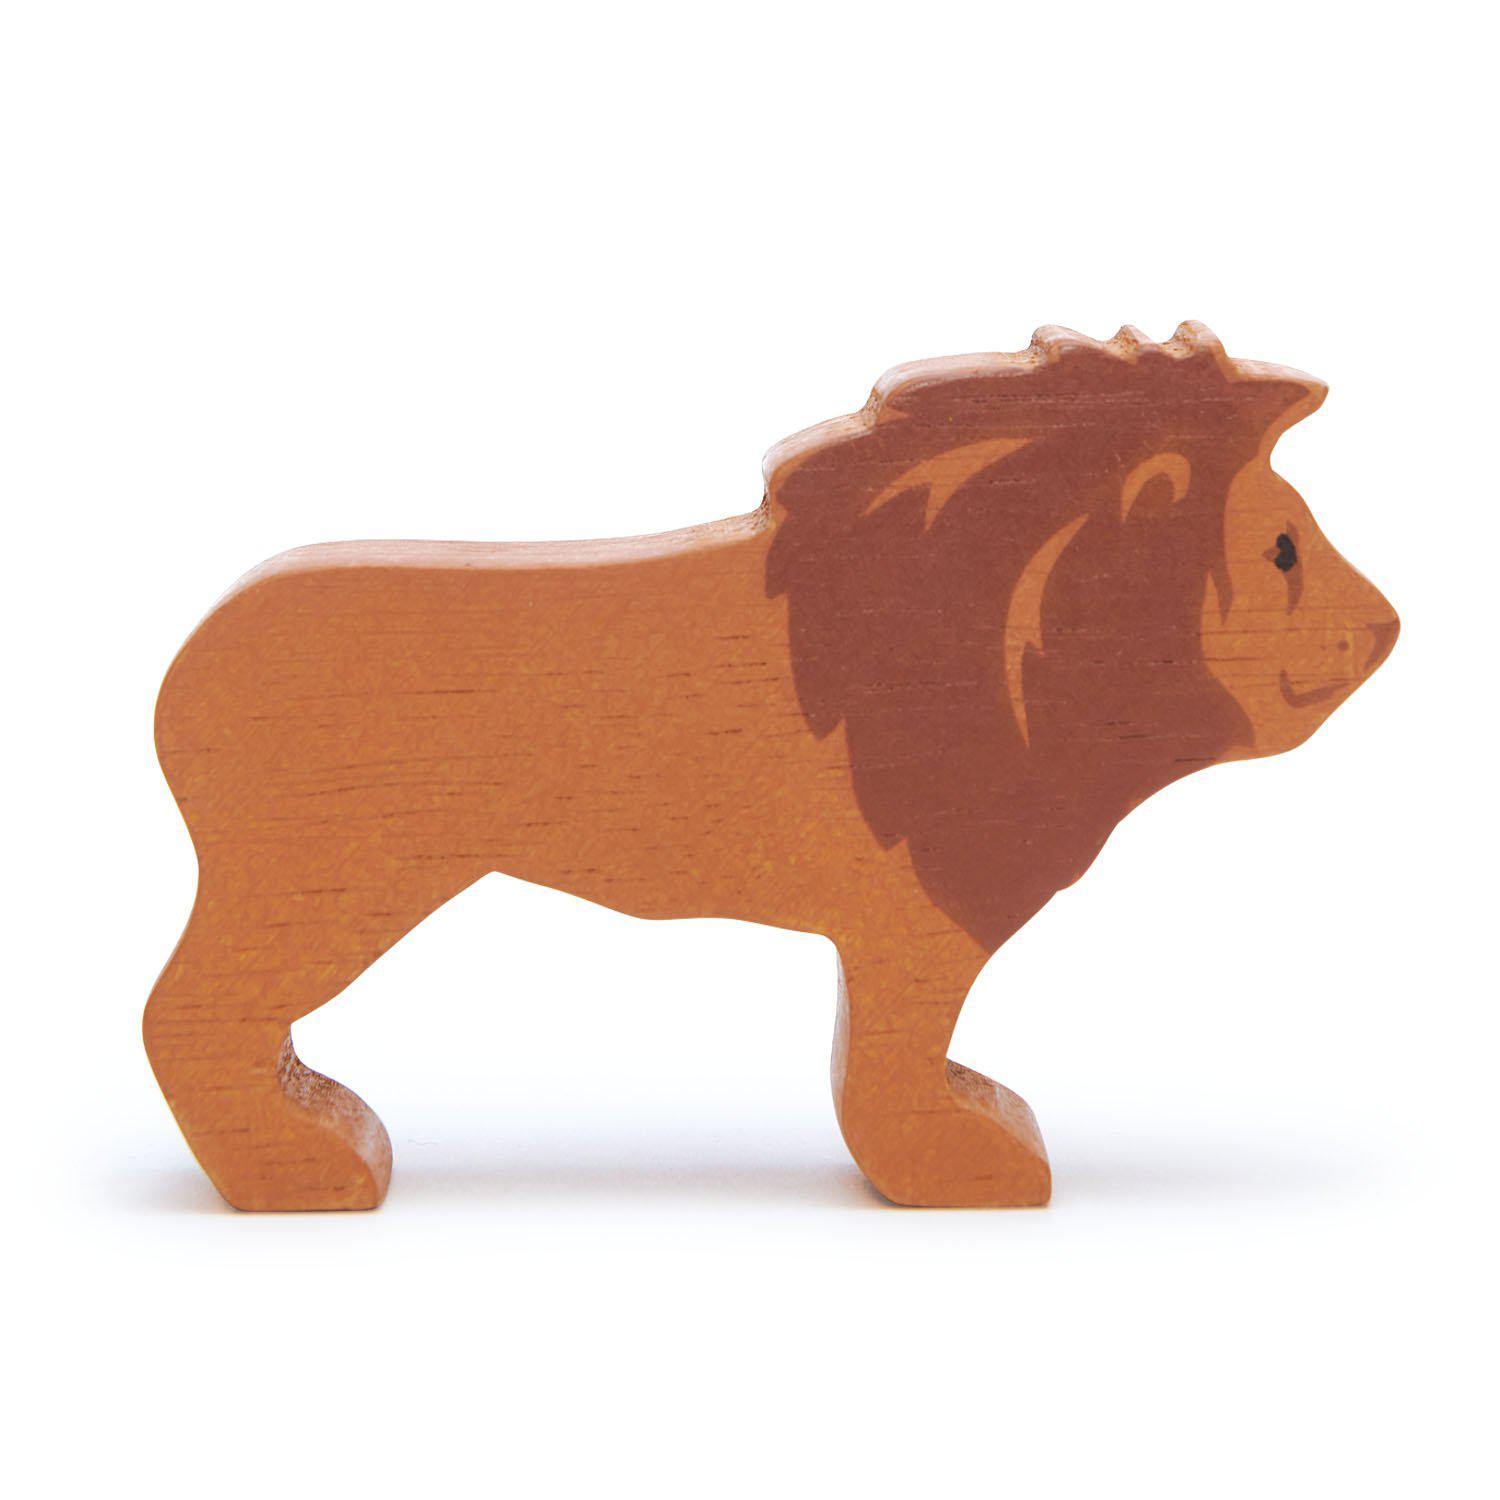 Oroszlán, prémium minőségű fából - Lion - Tender Leaf Toys-Tender Leaf Toys-1-Játszma.ro - A maradandó élmények boltja